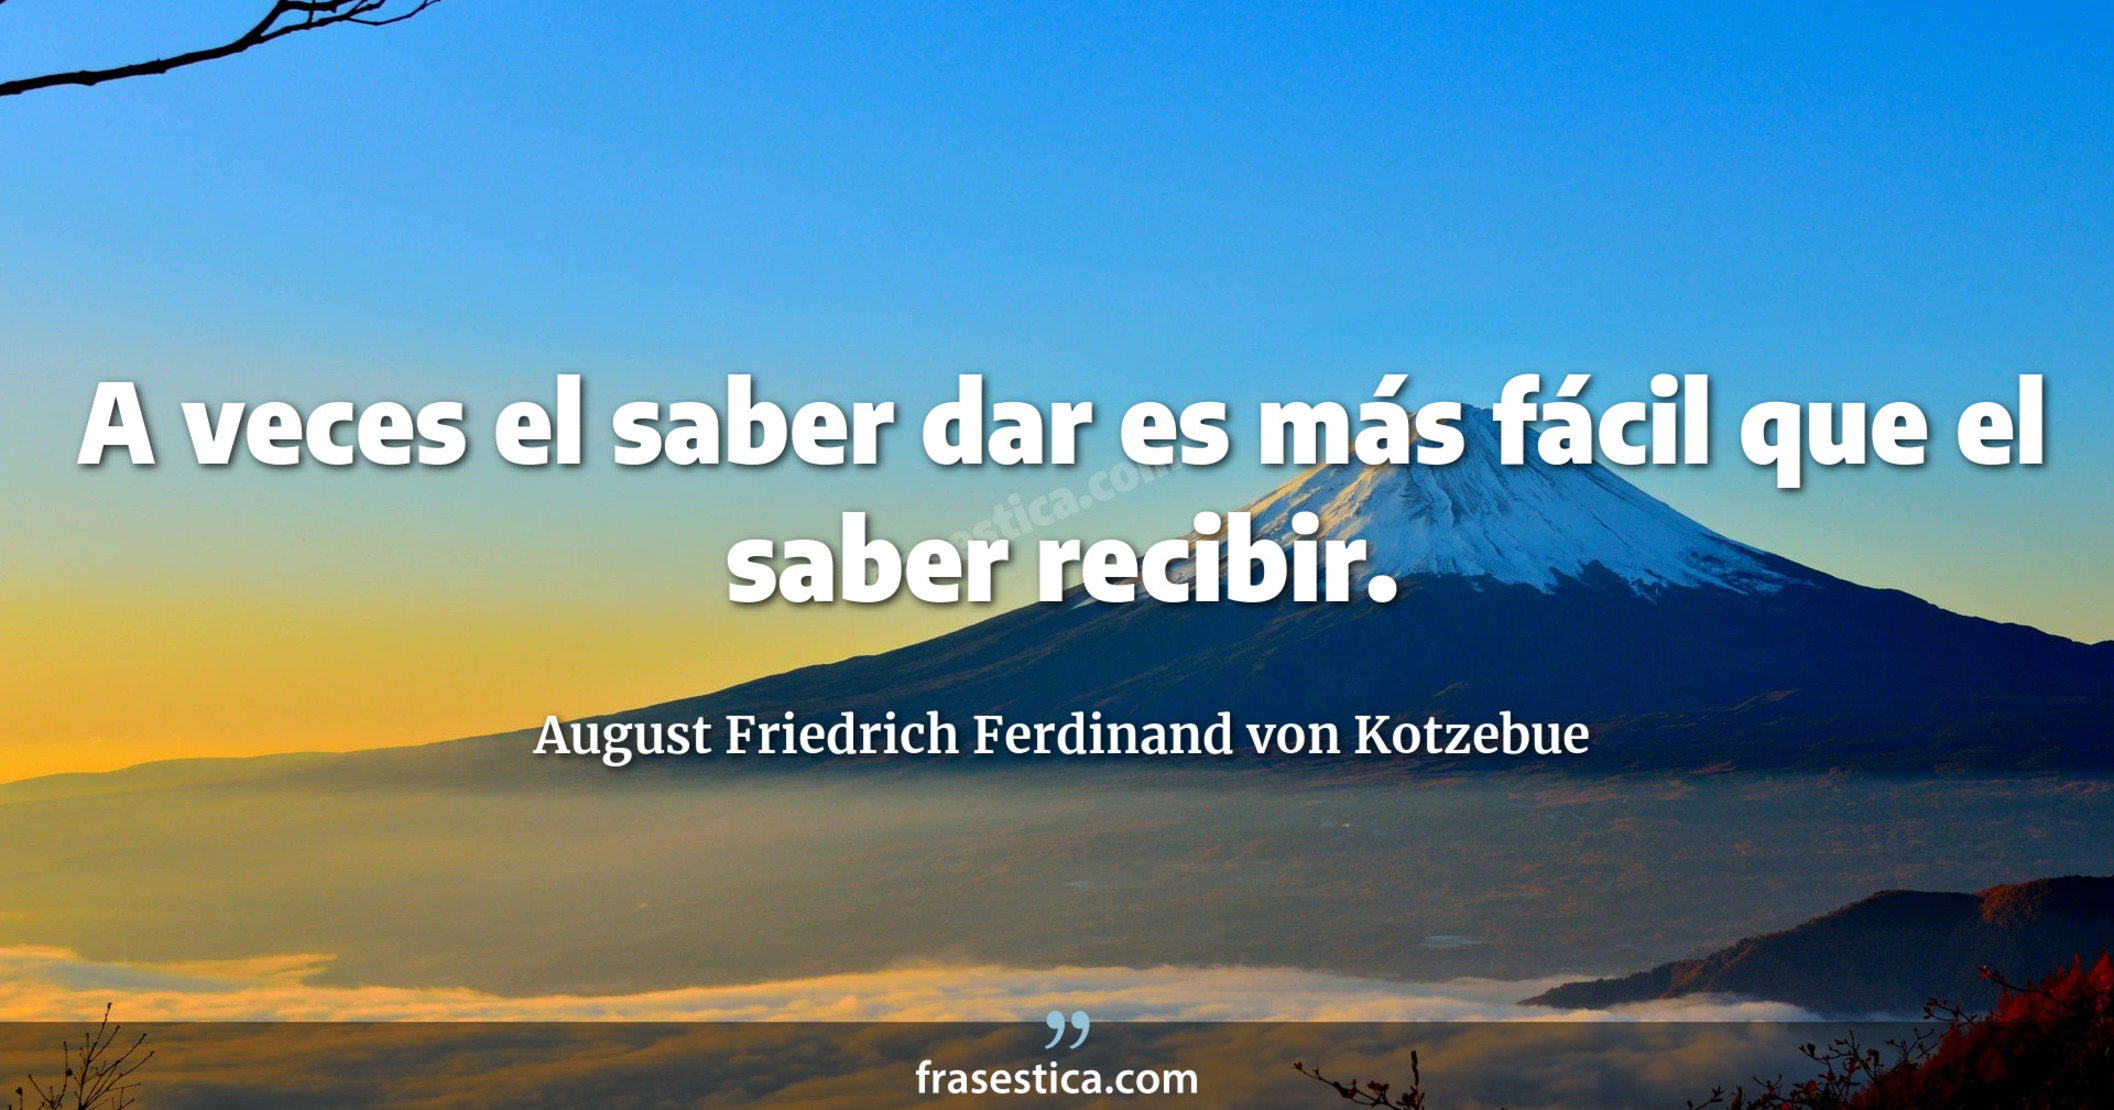 A veces el saber dar es más fácil que el saber recibir. - August Friedrich Ferdinand von Kotzebue